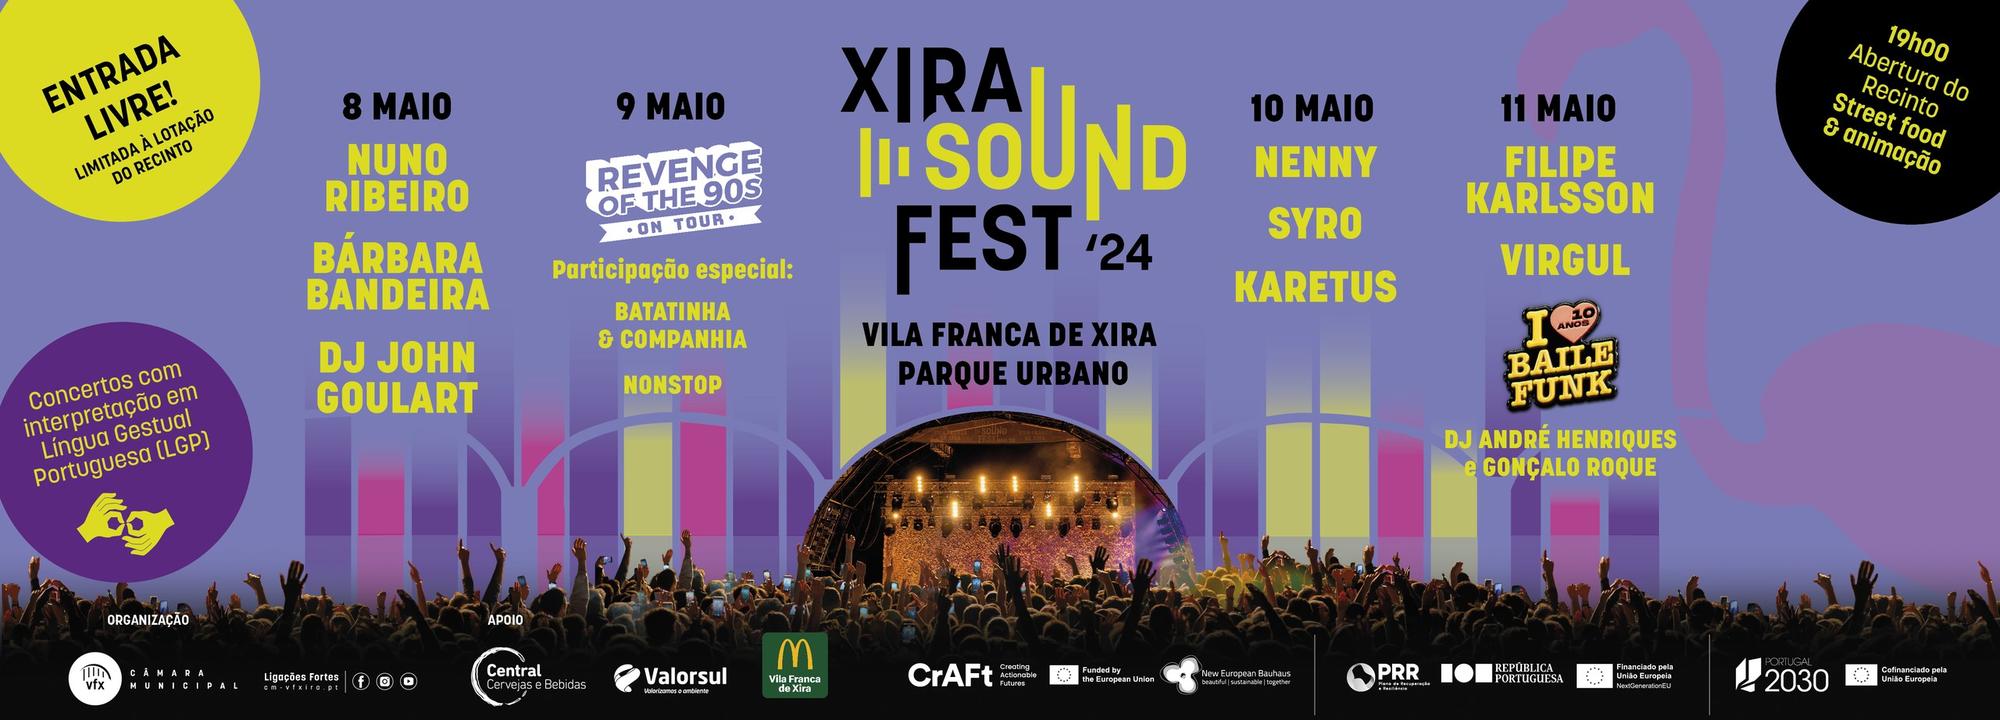 O Xira Sound Fest está de regresso!  